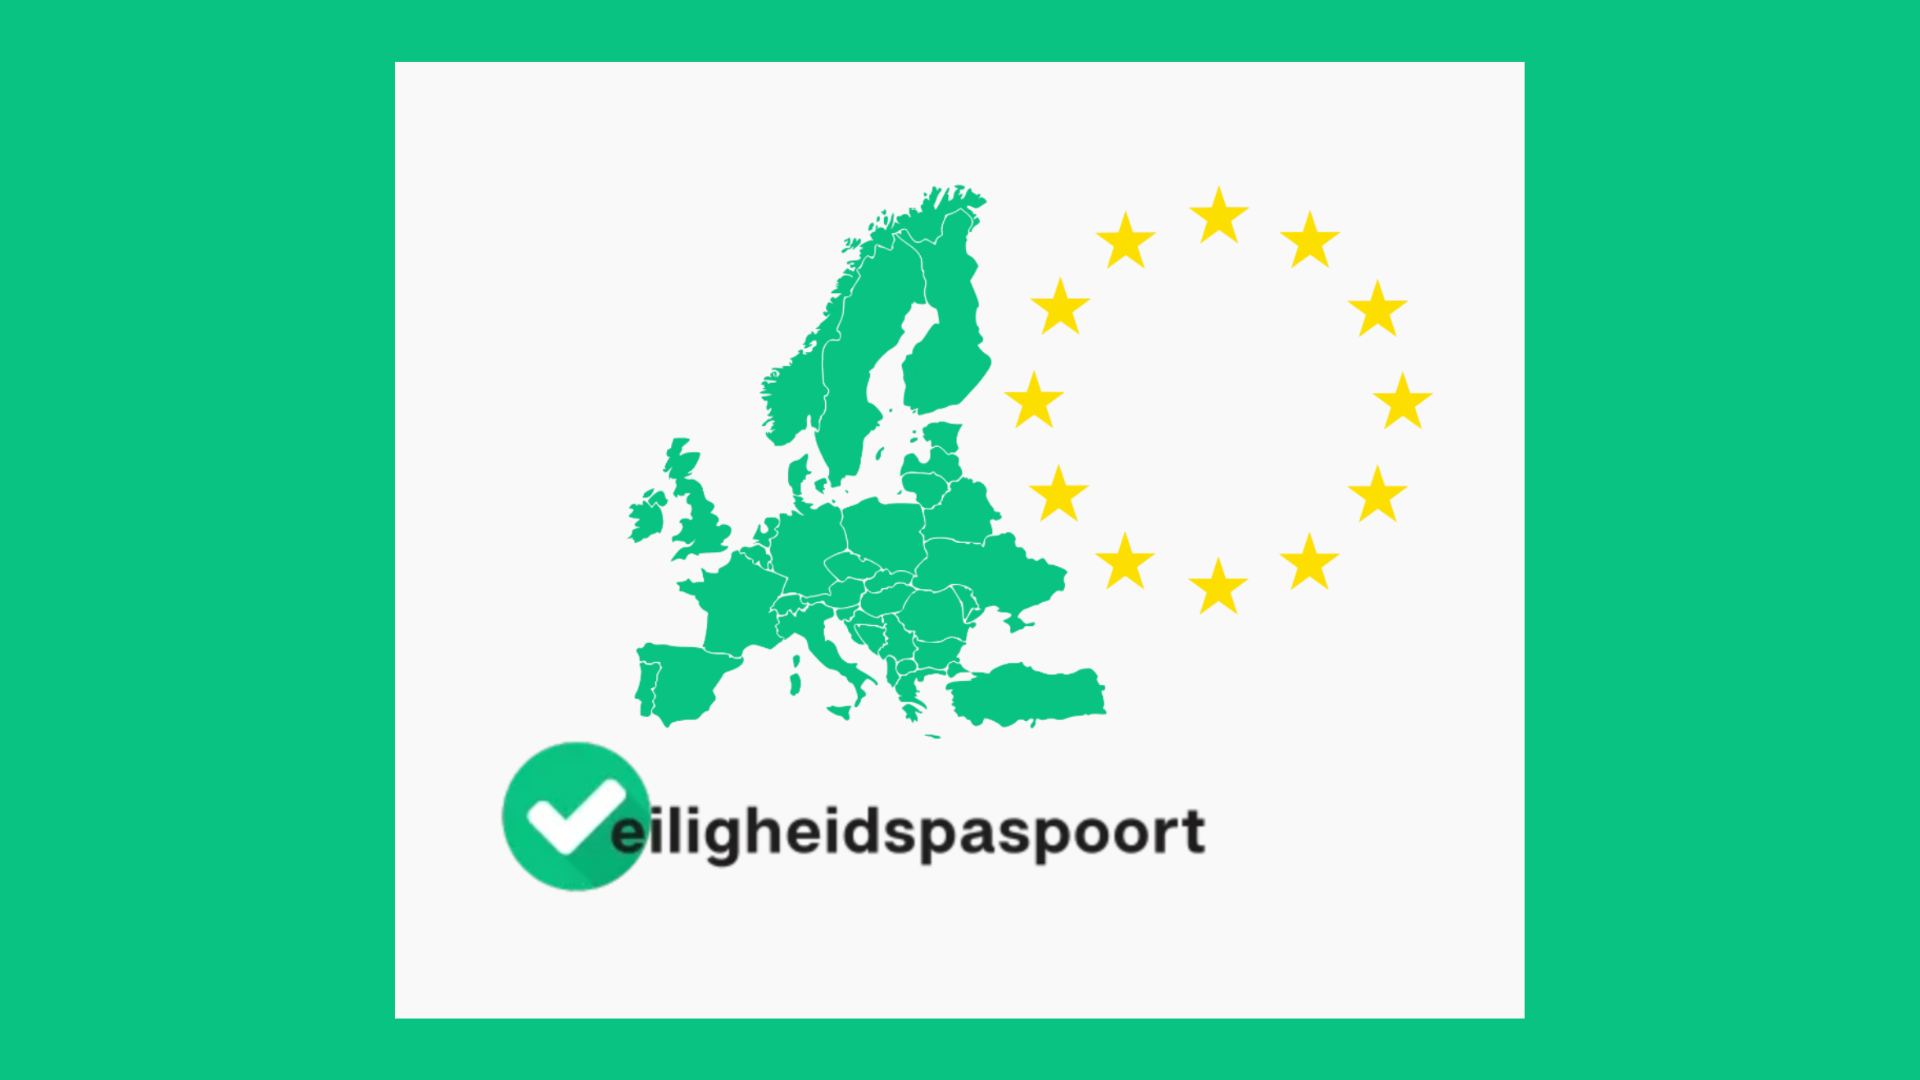 logo van het veiligheidspaspoort: kaart van europa met de landen in de groene huisstijlkleur van SFP met daarnaast de Europese cirkel van 12 gouden sterren 